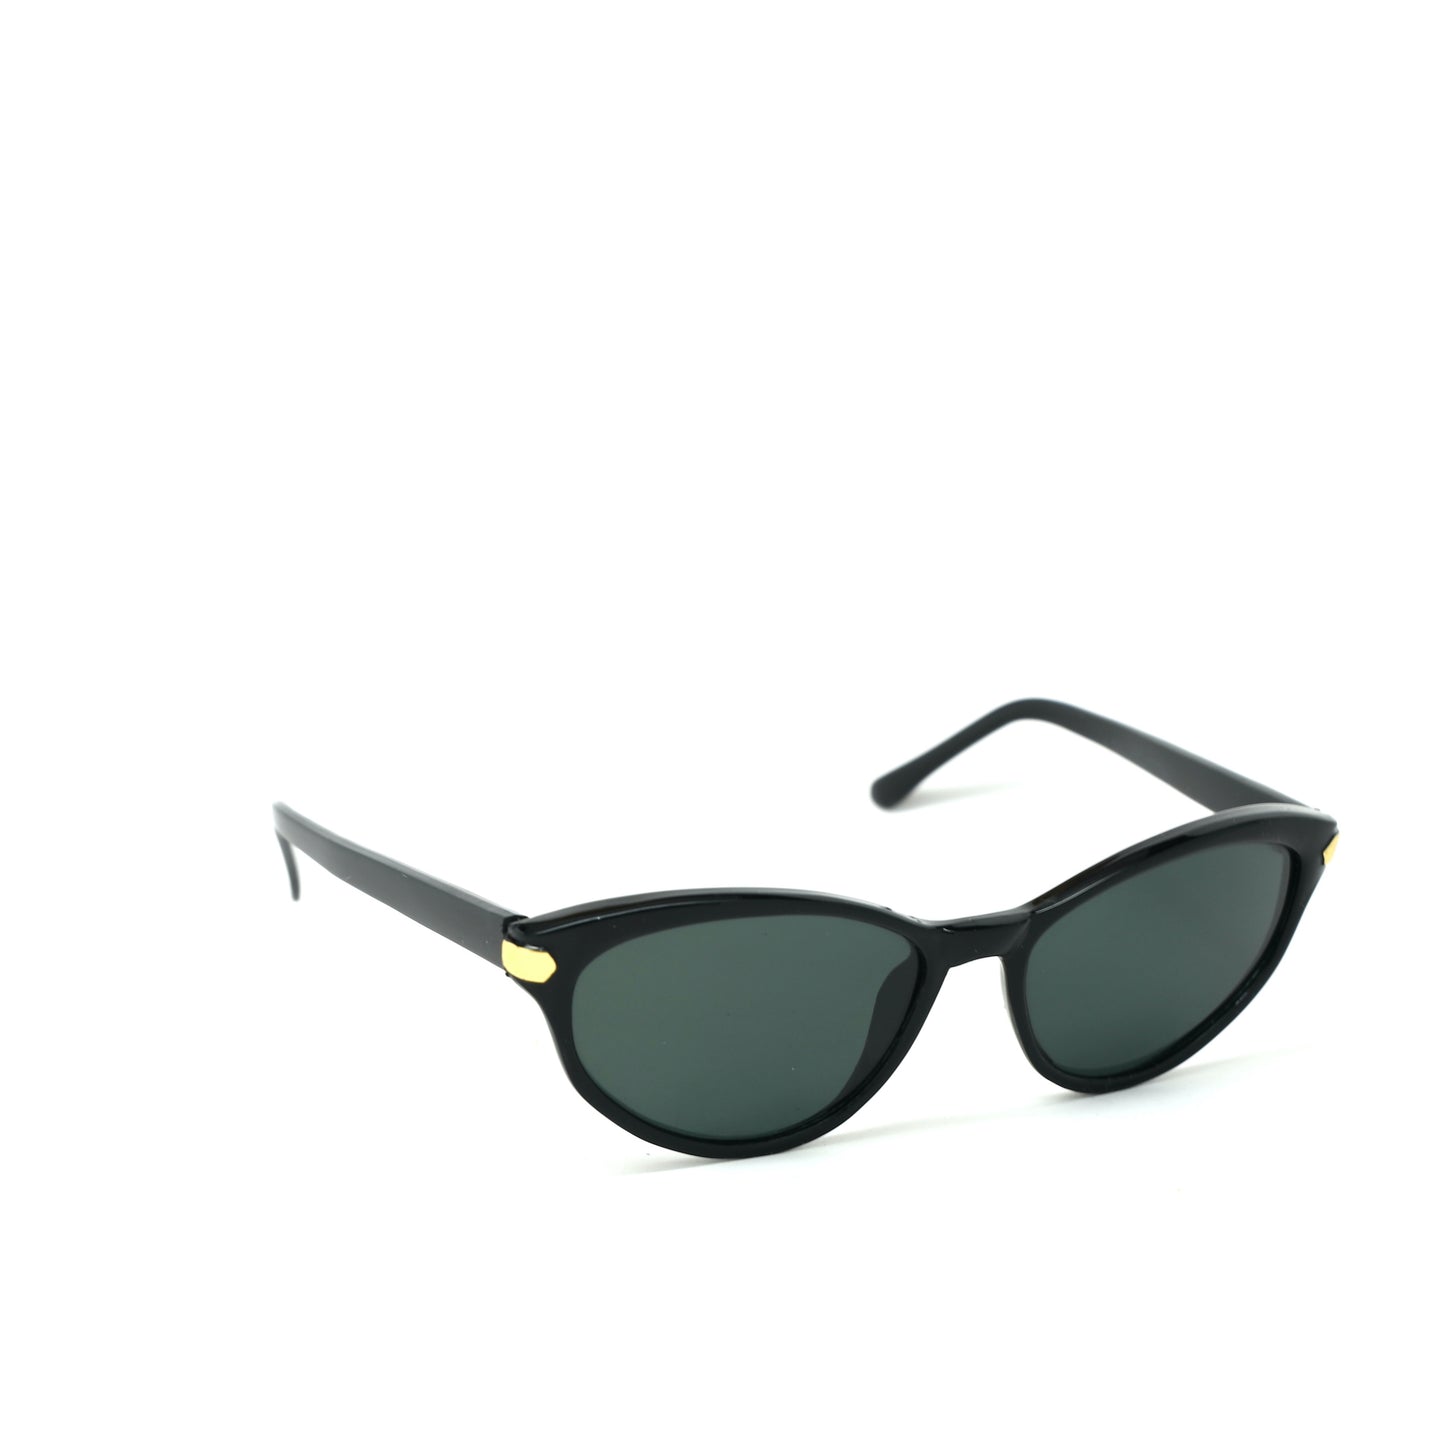 Vintage Standard Size Original Melrose Oval Sunglasses - Black